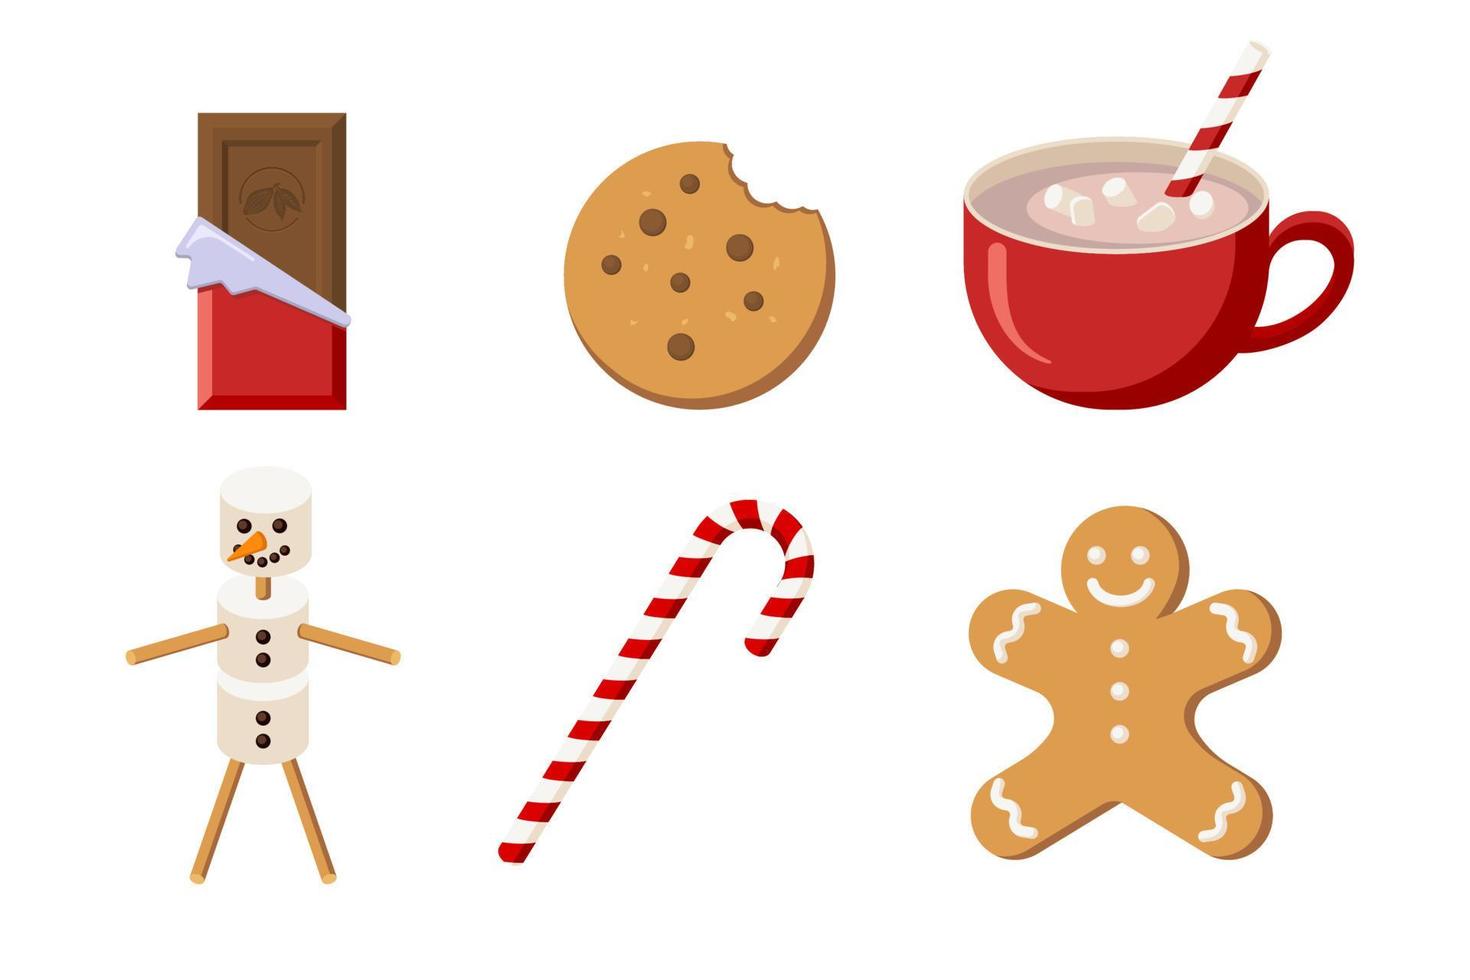 kerst snoep collectie. vlakke stijl. chocolade, coockie, cacao, marshmallow snowman, gingerbread man en snoep. wintervakantieset voor begroeting en uitnodigingsontwerp en decoratie vector